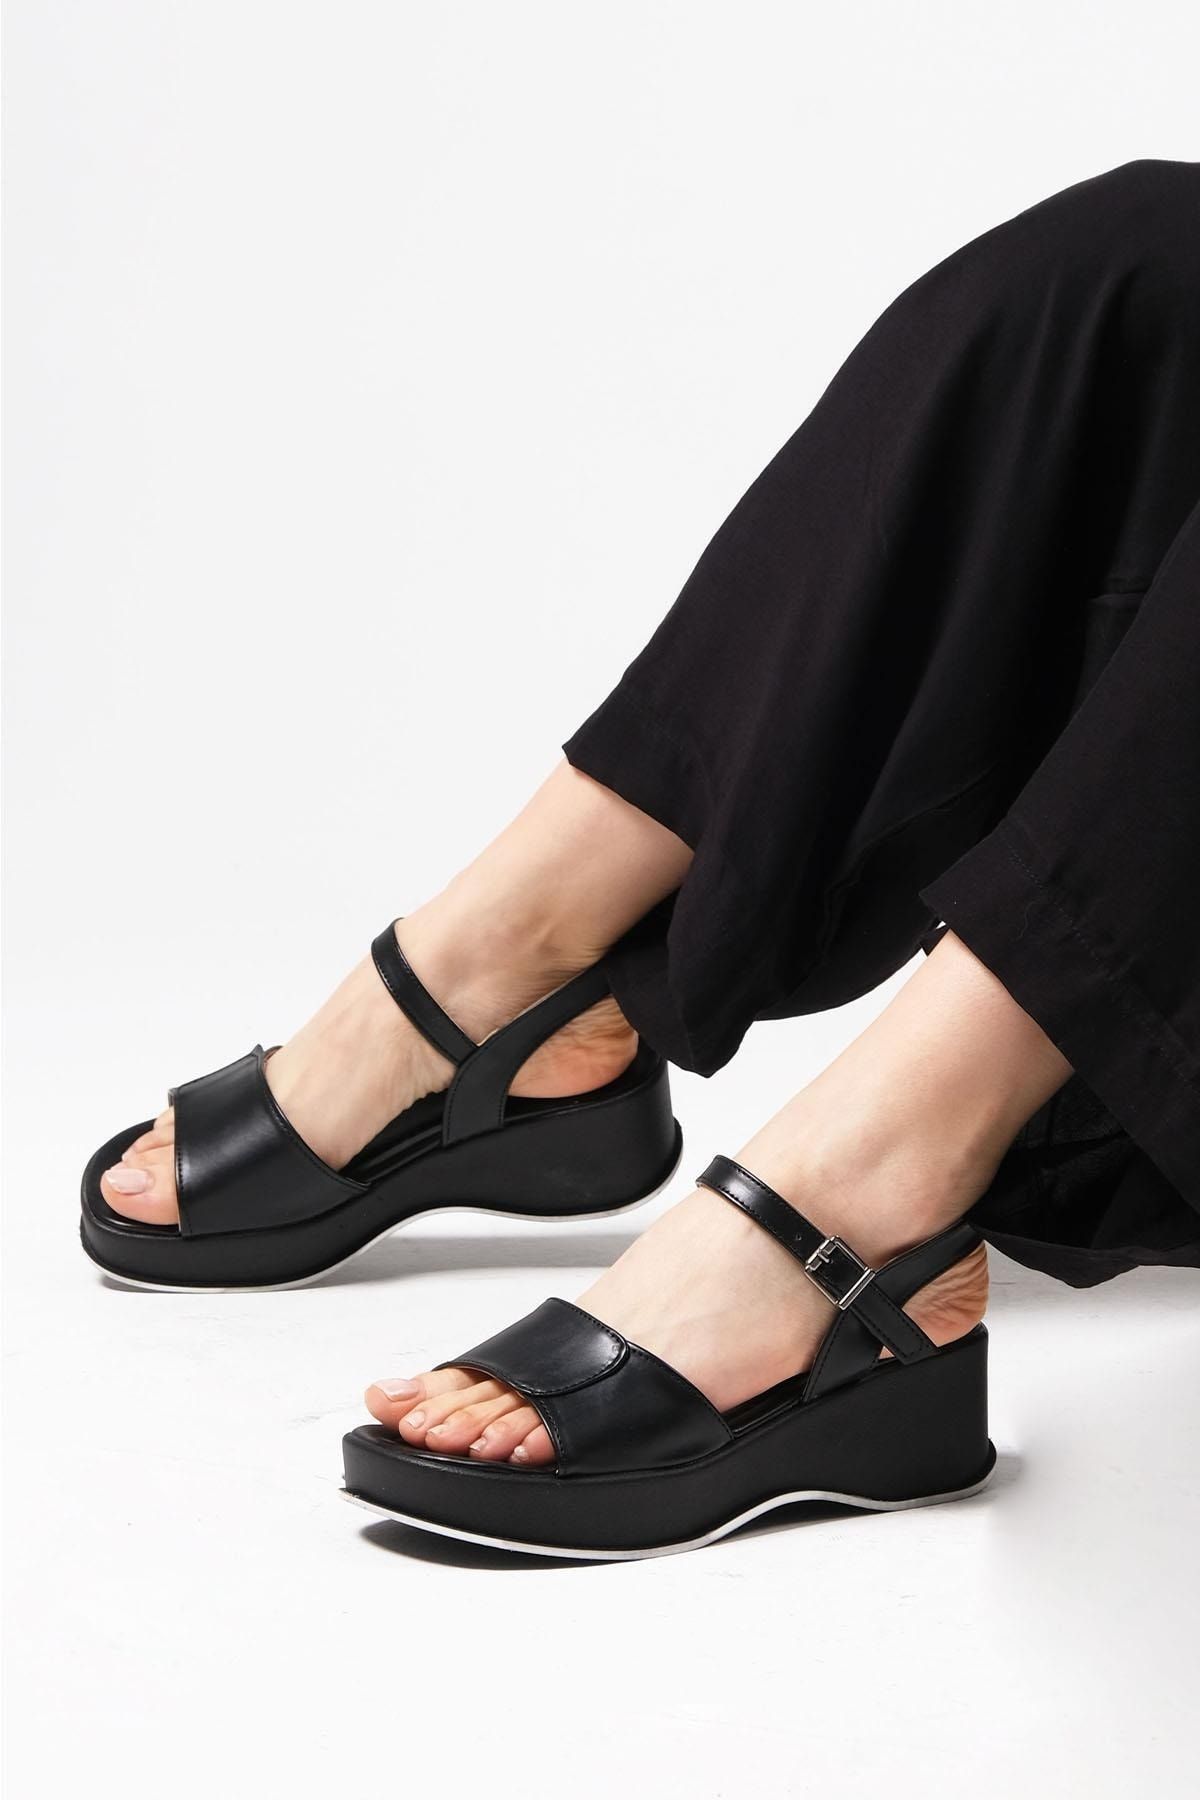 Mio Gusto Clara Siyah Renk Kalın Tabanlı Kadın Sandalet Ayakkabı